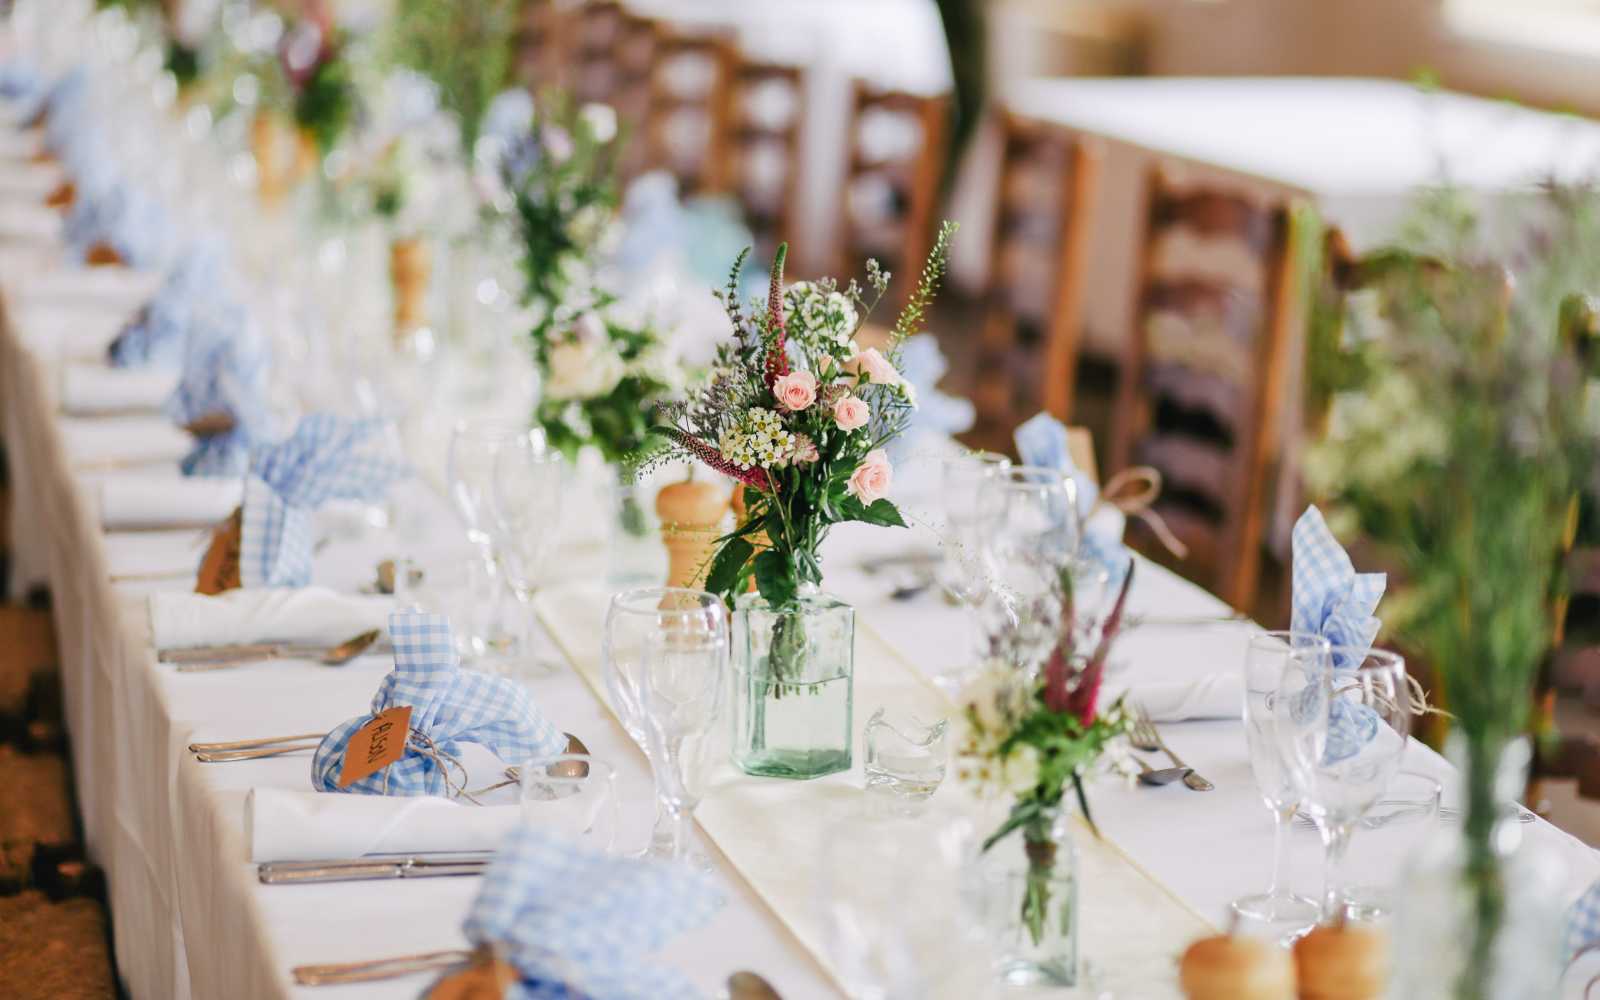 tavola imbandita con fiori freschi e tovaglia bianca per un matrimonio stile country